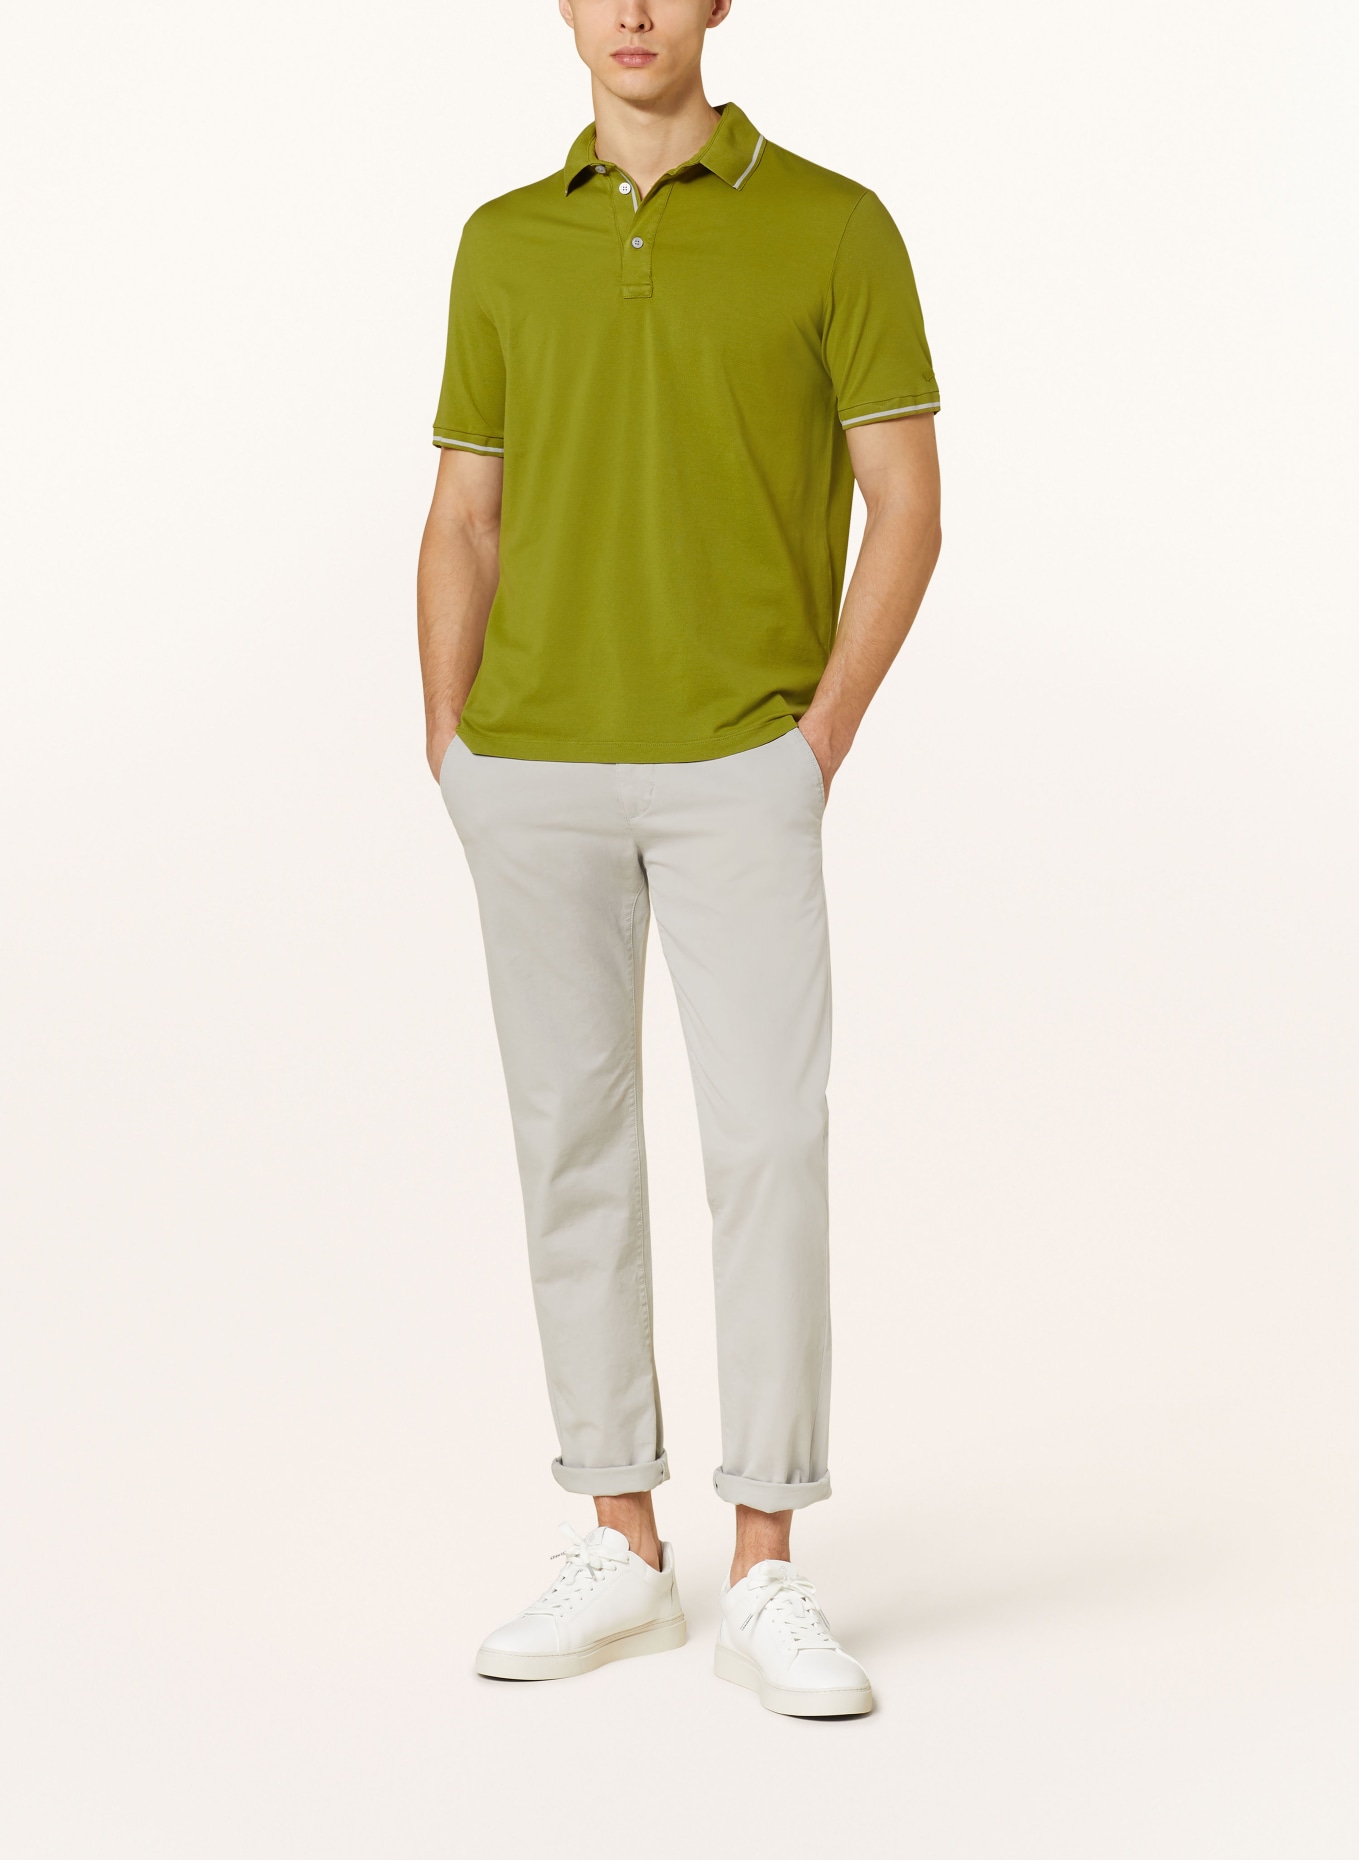 PAUL & SHARK Piqué-Poloshirt, Farbe: GRÜN (Bild 2)